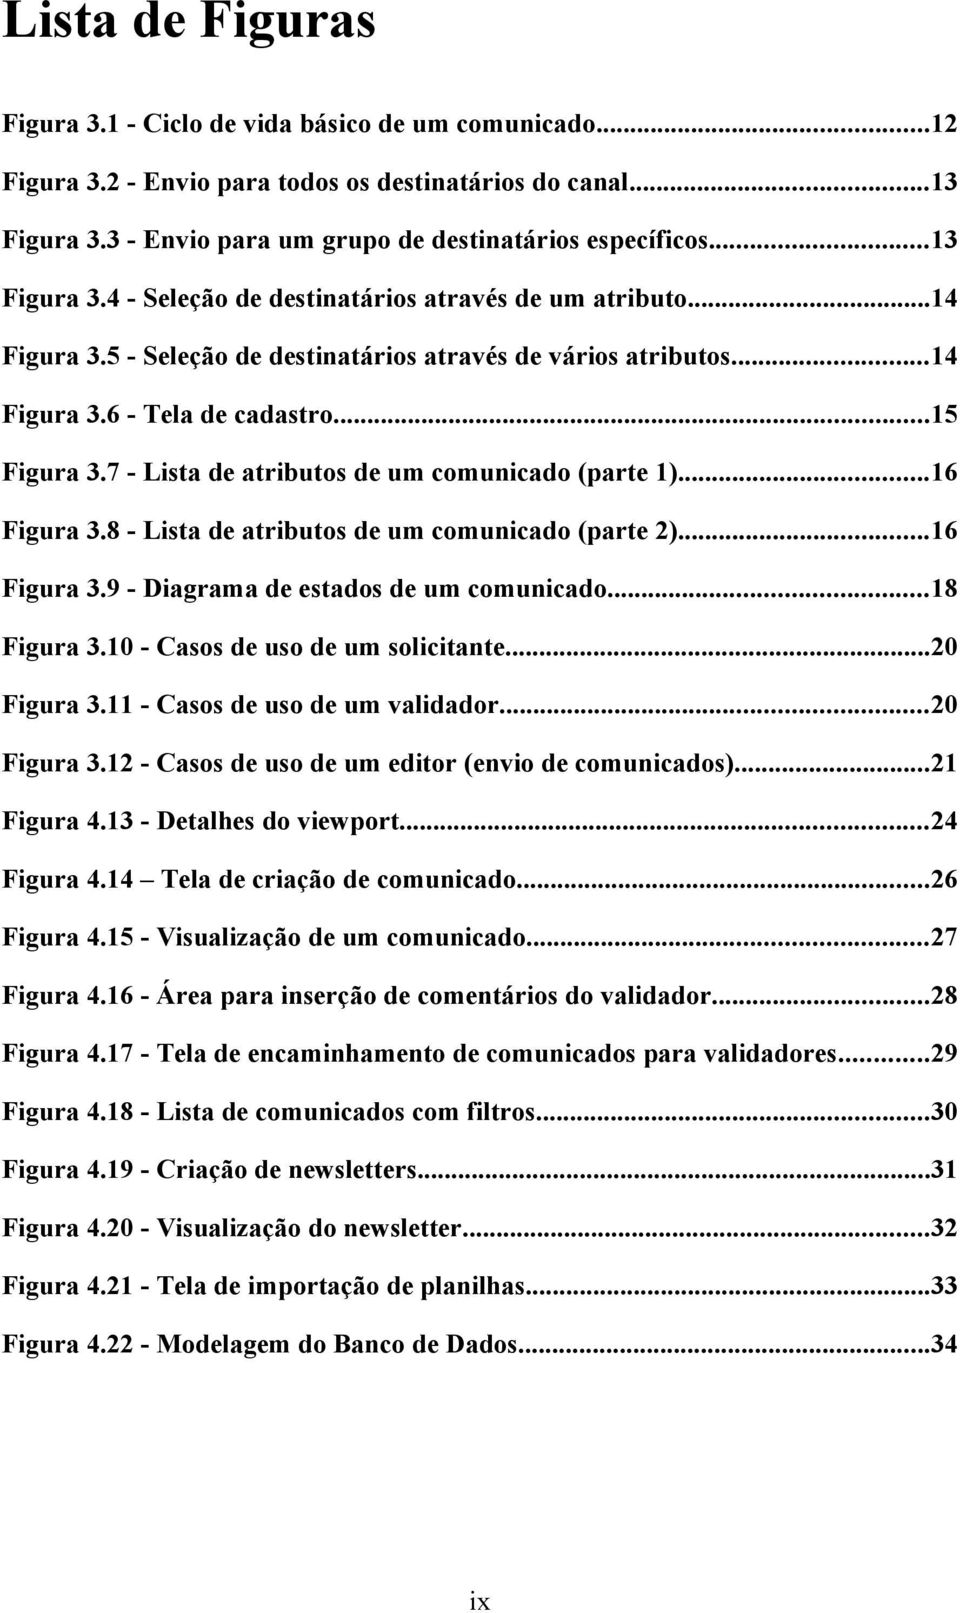 7 - Lista de atributos de um comunicado (parte 1)...16 Figura 3.8 - Lista de atributos de um comunicado (parte 2)...16 Figura 3.9 - Diagrama de estados de um comunicado...18 Figura 3.